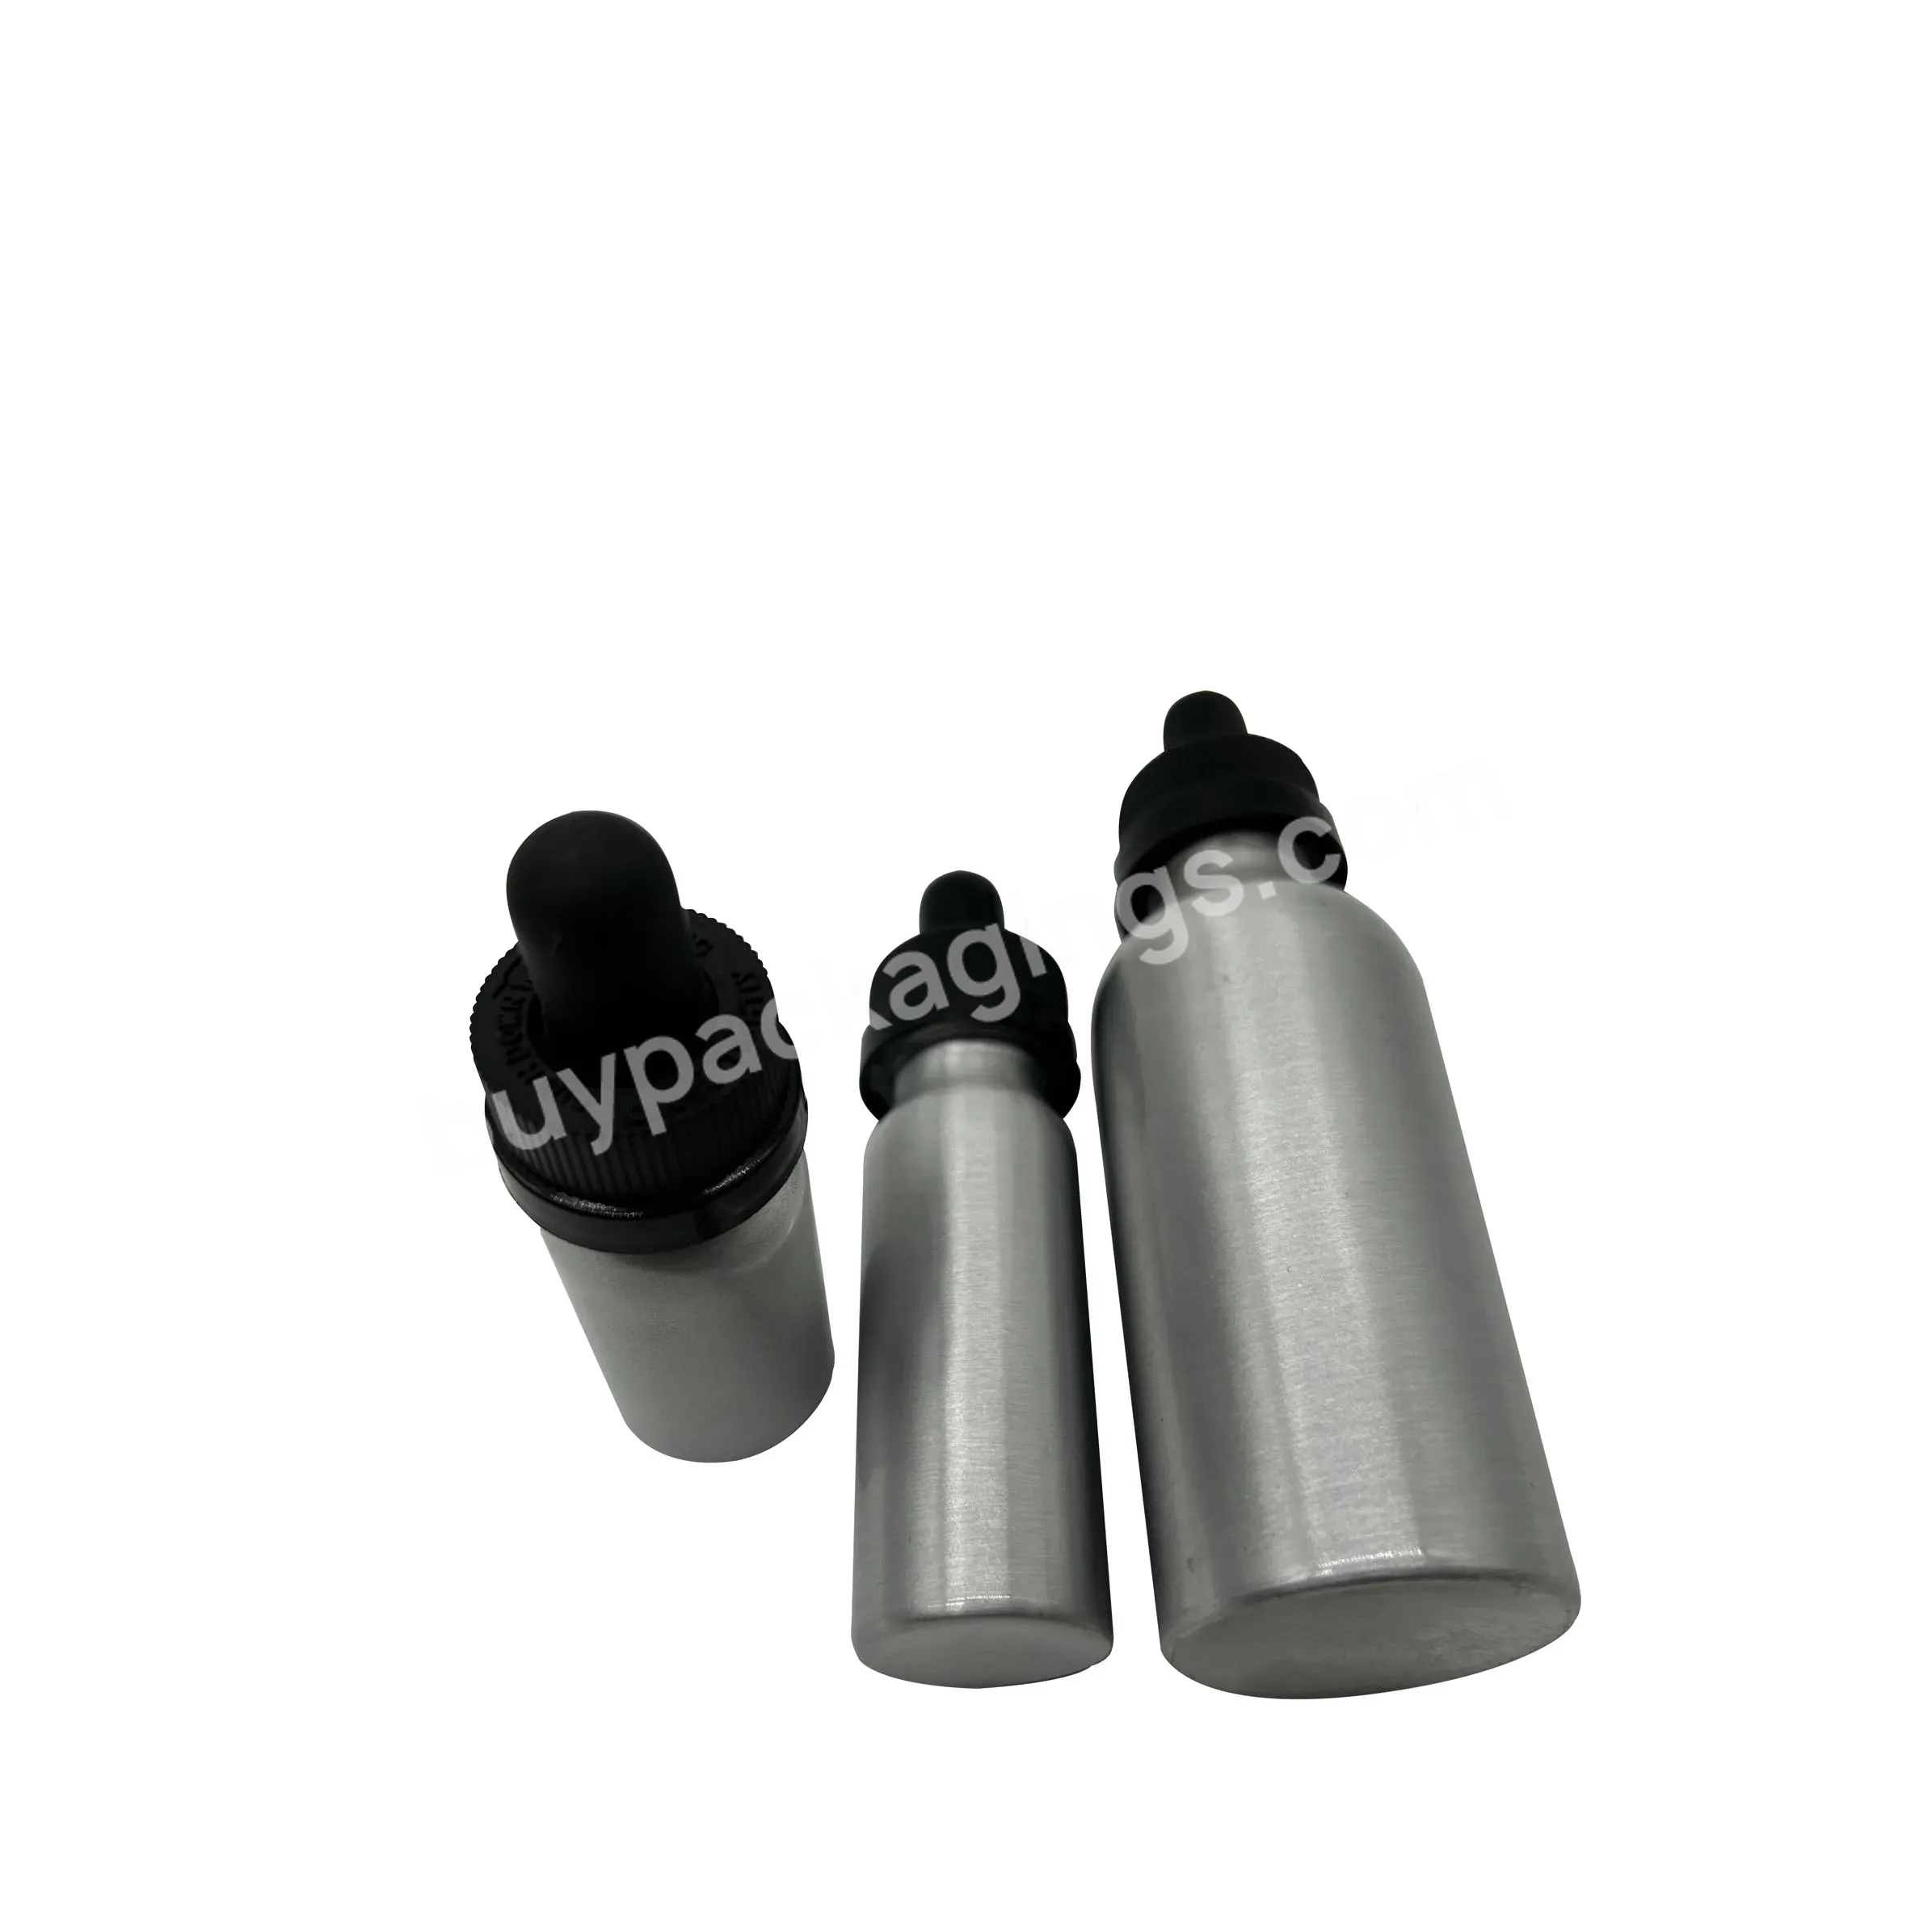 Stock 30 40 50 60 80ml Metal Bottle Body Soft Rubber Dropper Tube - Buy Portable,Divided Bottle,Dropper Tube.